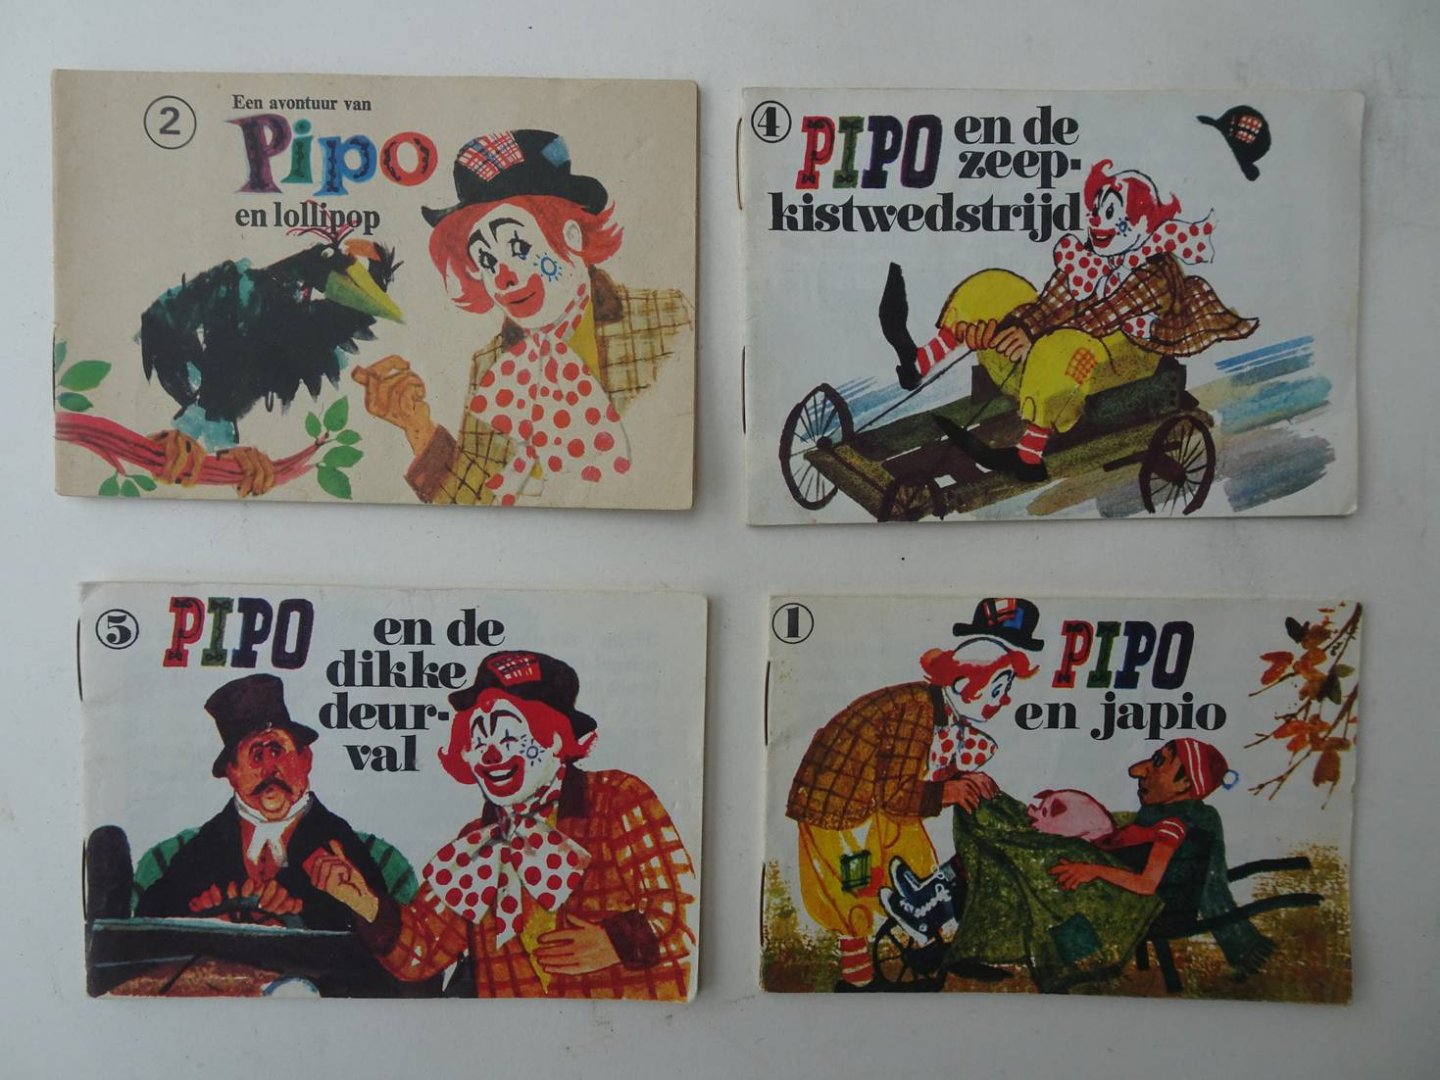 Meuldijk, W. & J. Wesseling. - Pipo en Lollipop/ Pipo en Japio/ Pipo en de zeepkistwedstrijd/ Pipo en de dikke deurval. 4 delen.